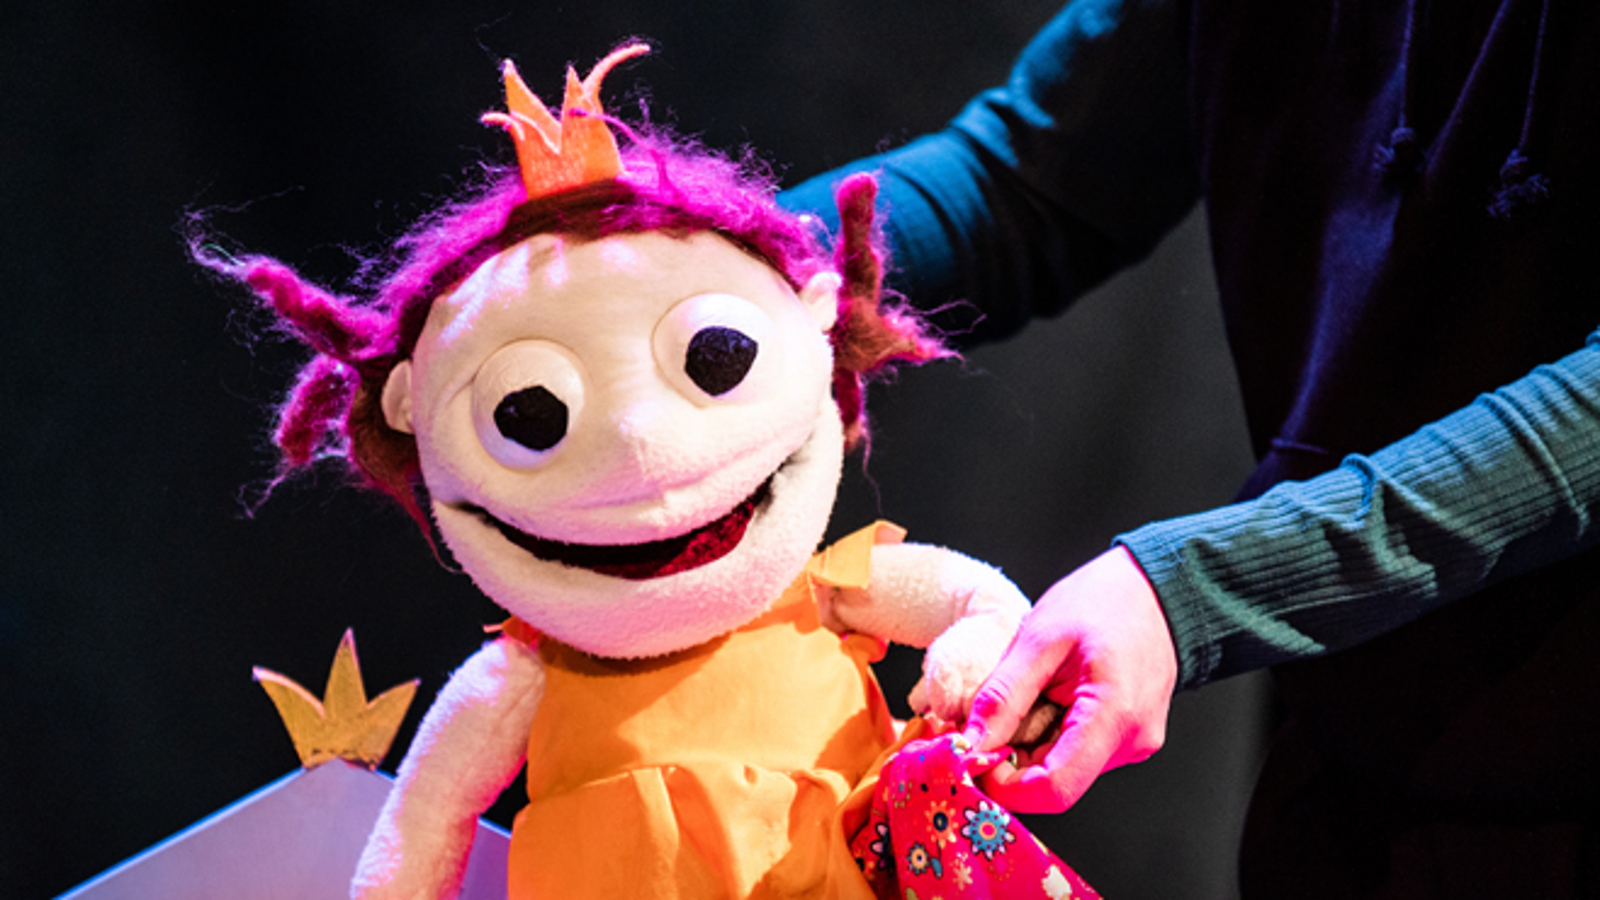 Kuvassa on Molla-Maijan näköinen nukke, jolla on oranssi paita ja punainen pystykö tukka.  Takaa näkyvät kädet ja tummaa taustaa.